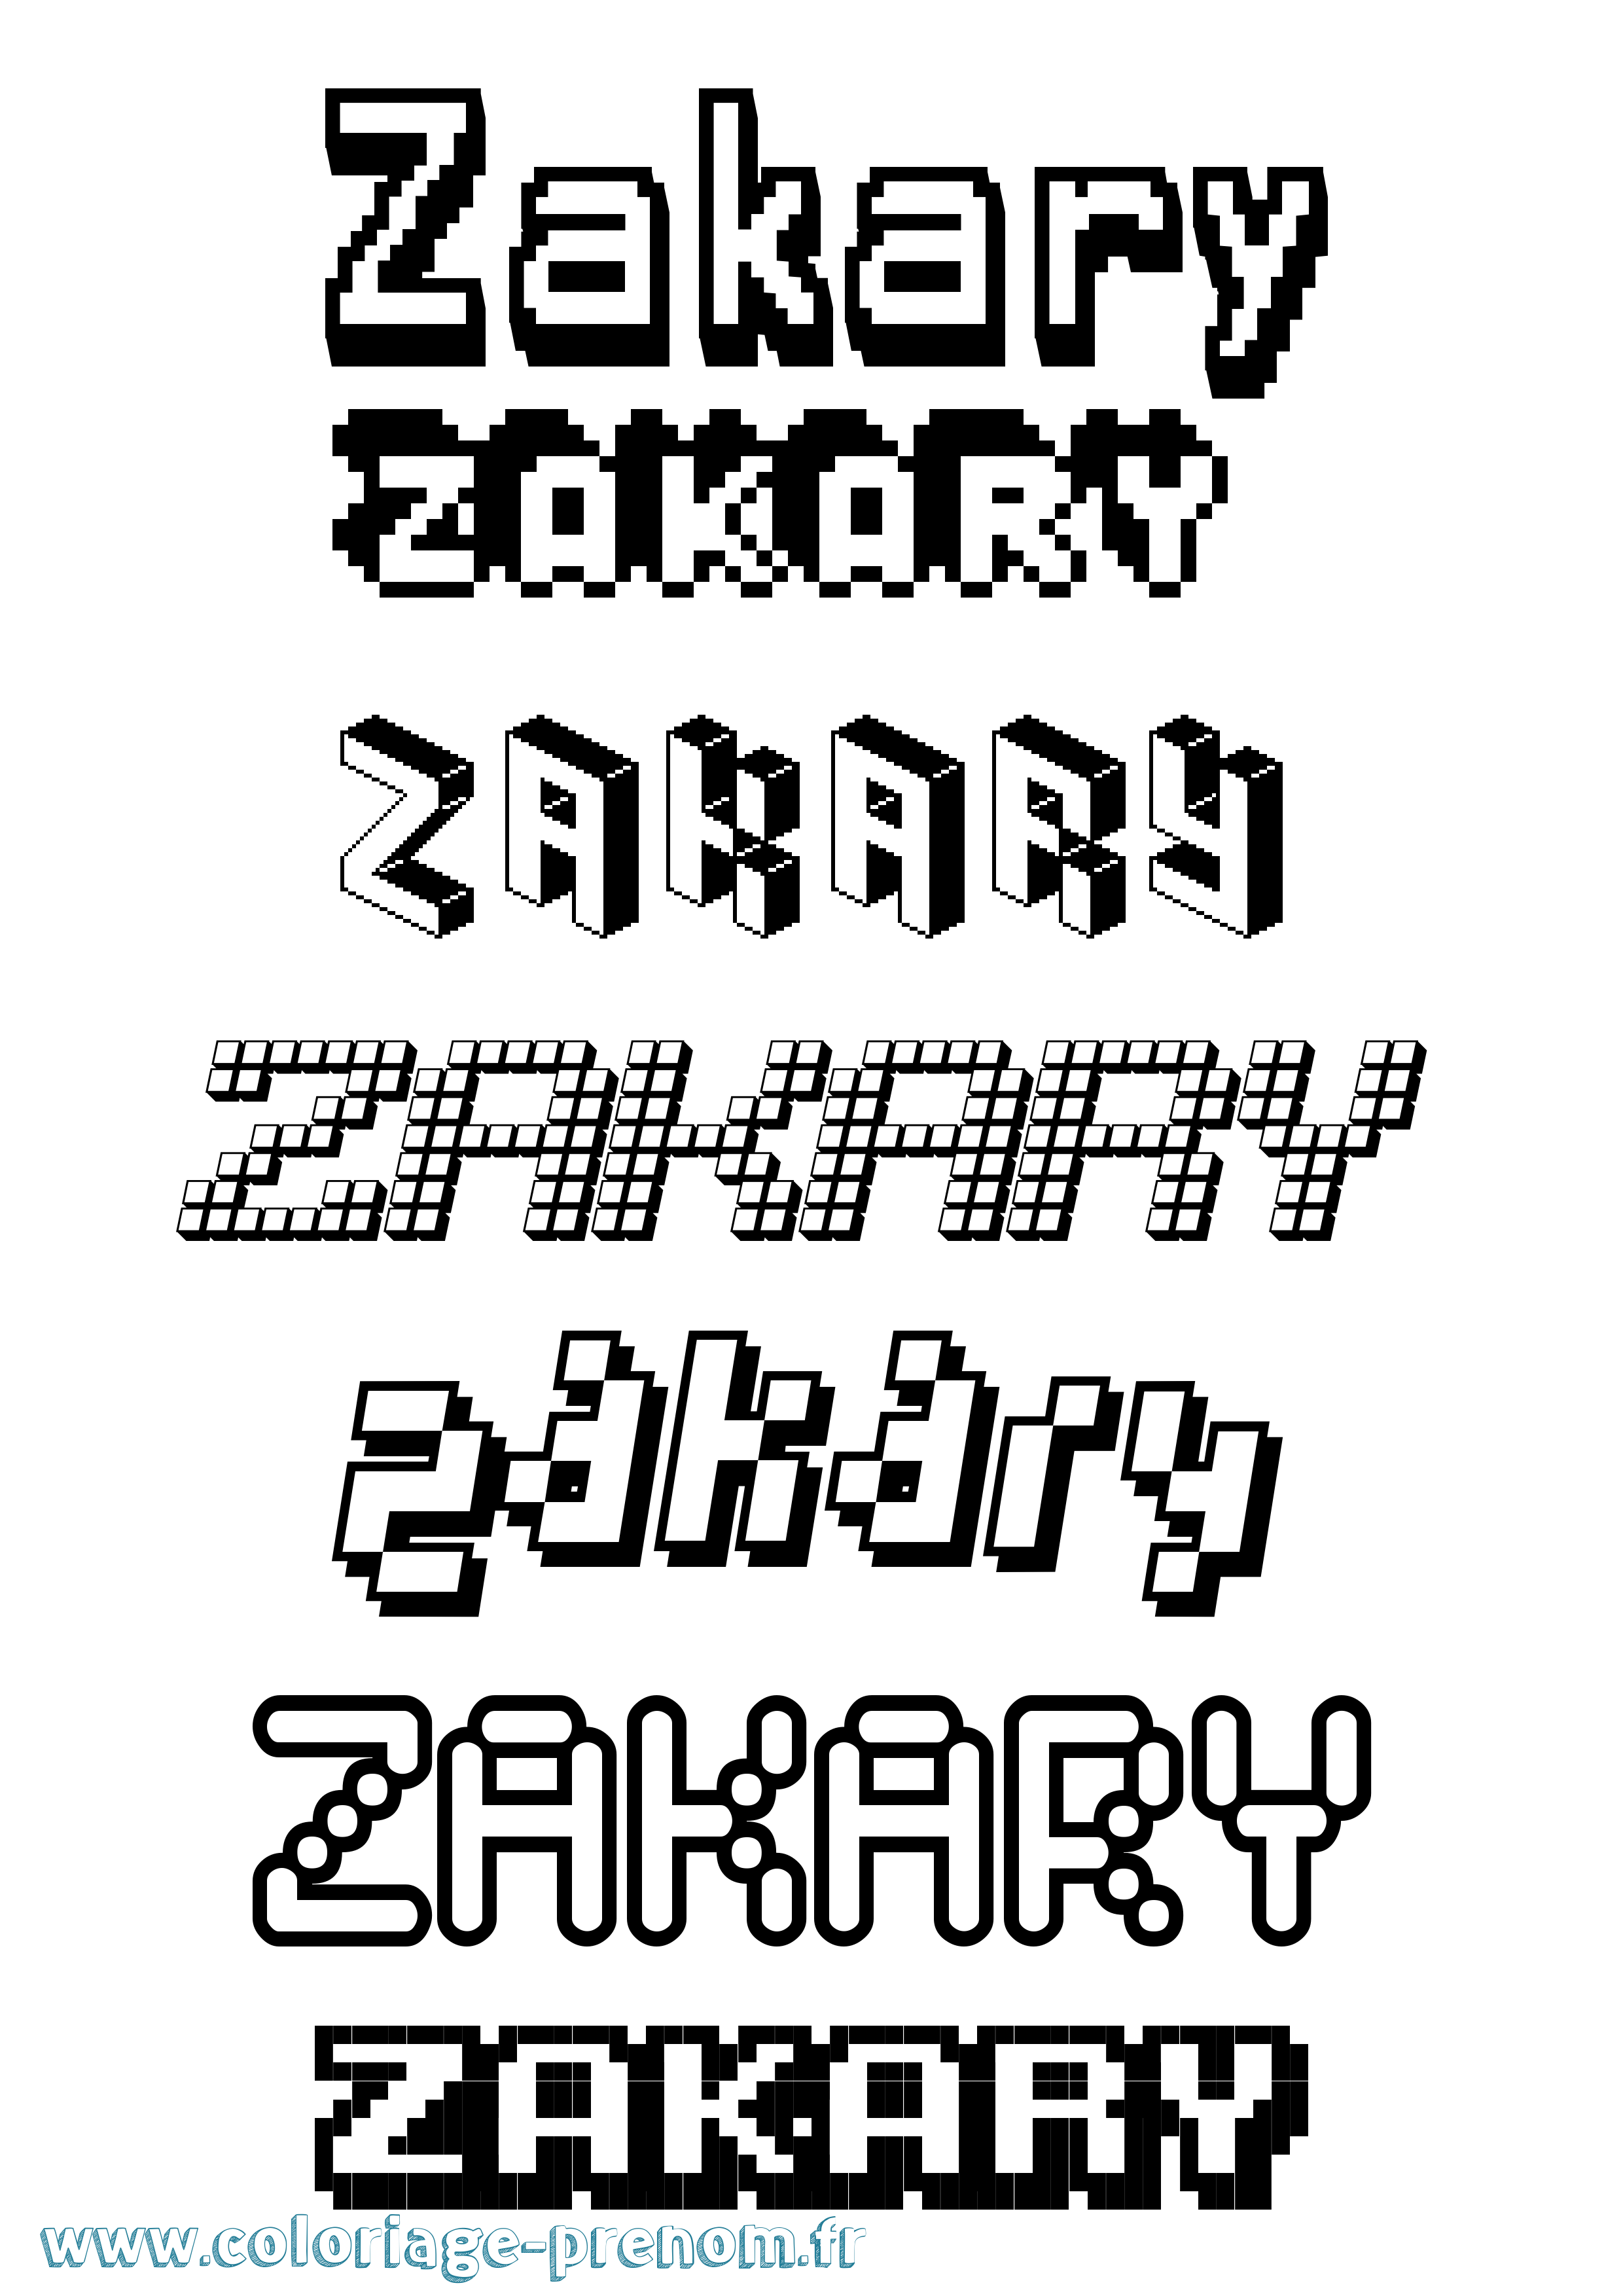 Coloriage prénom Zakary